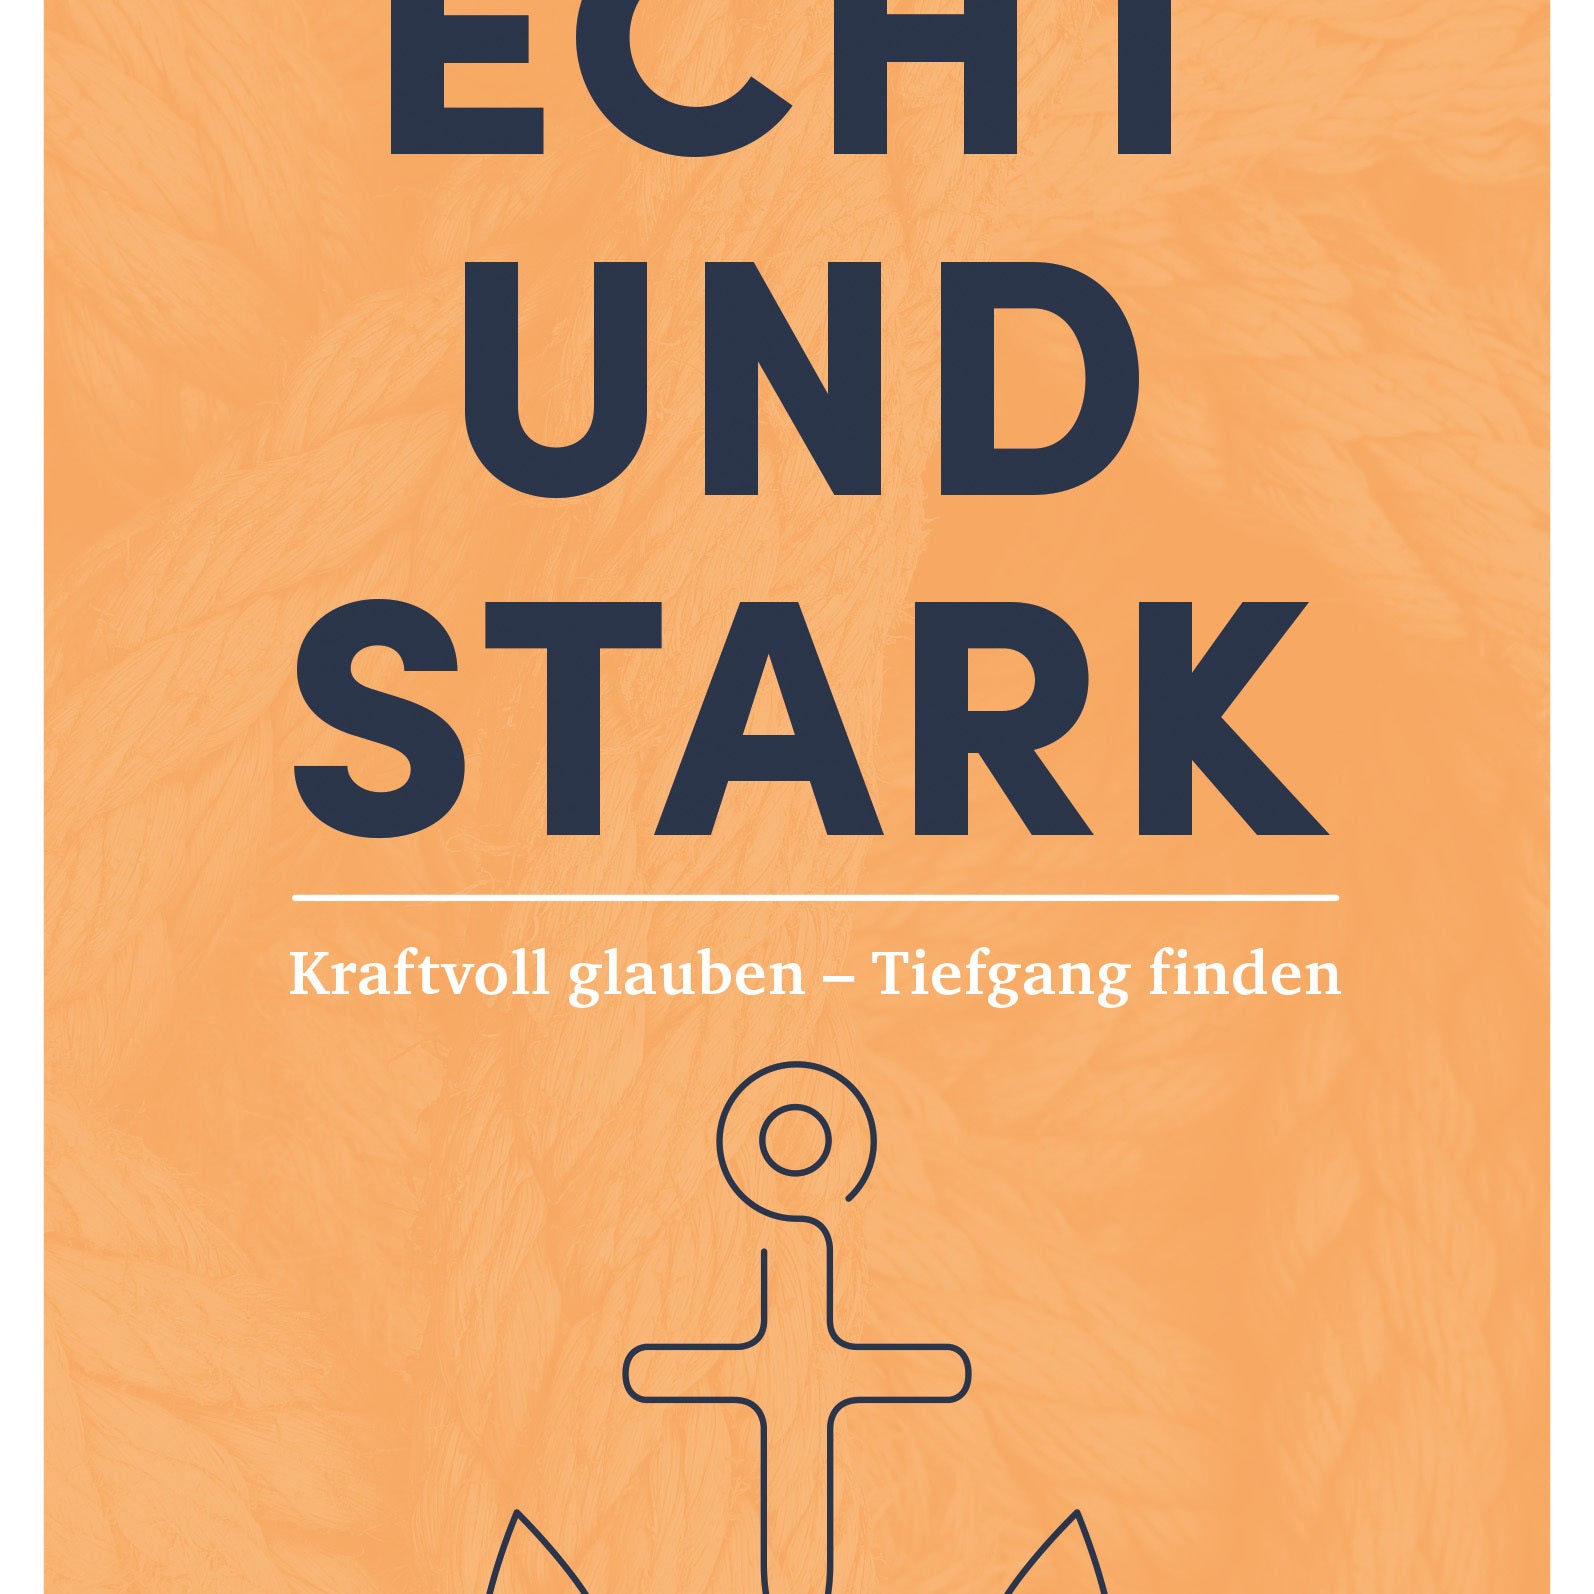 Echt und Stark - Gebetshaus Augsburg | Shop